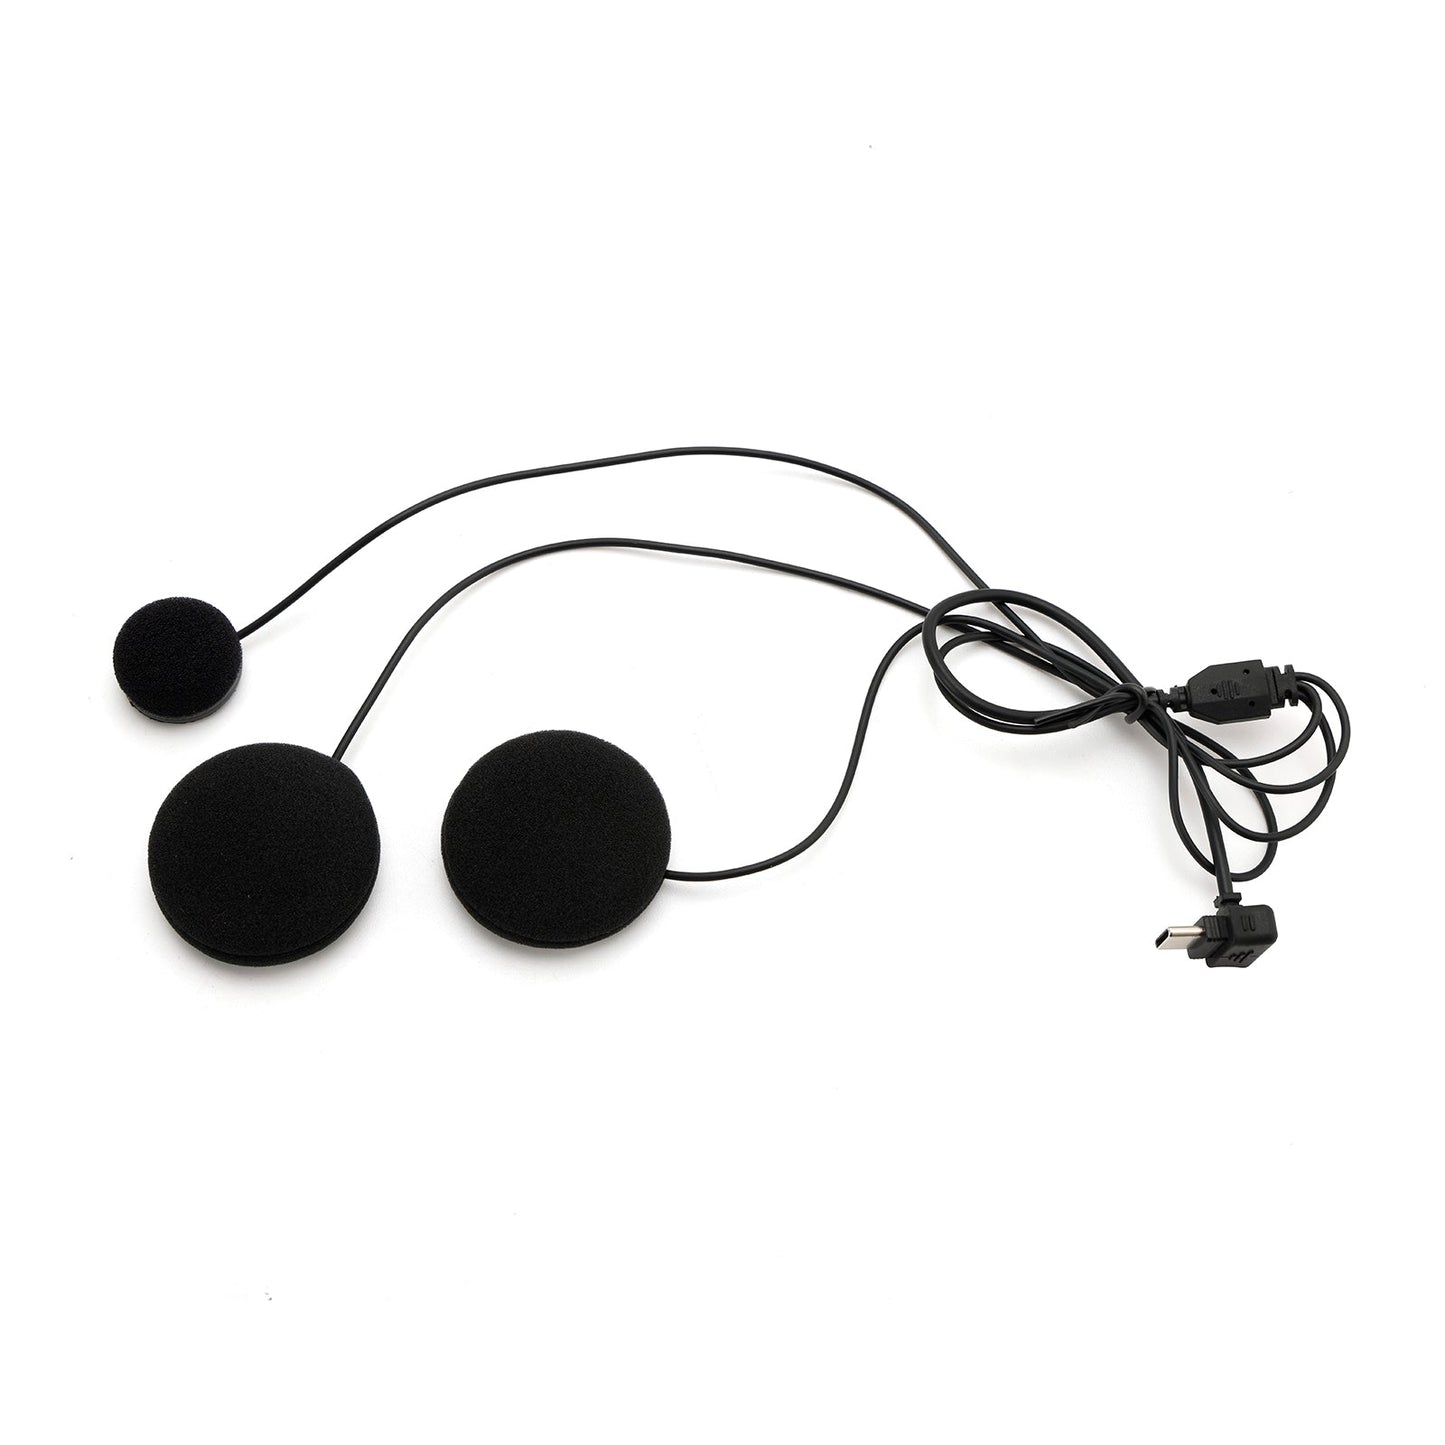 Helm Bluetooth Kopfhörer Headset Wireless Player Universal Y20 Für Motorrad